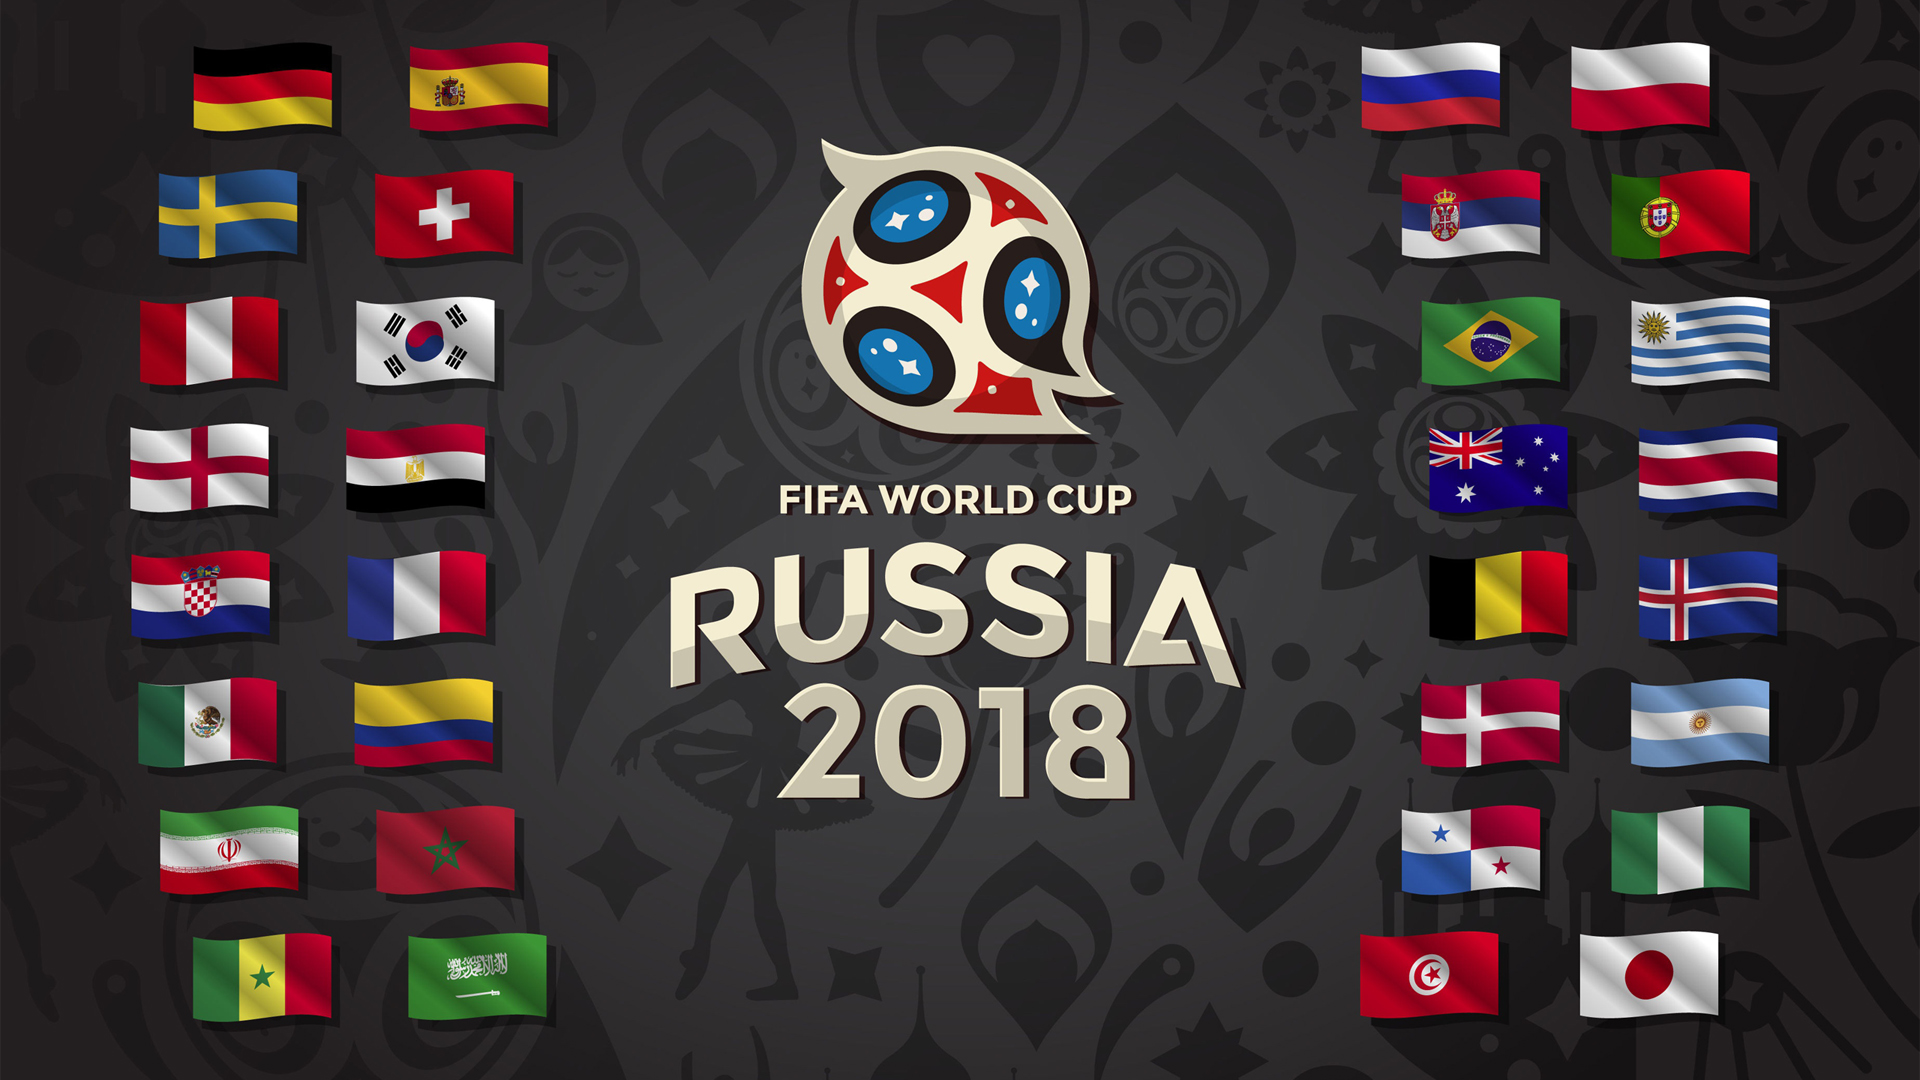 2018世界杯壁纸下载 2018世界杯壁纸高清图片大全 (全文)